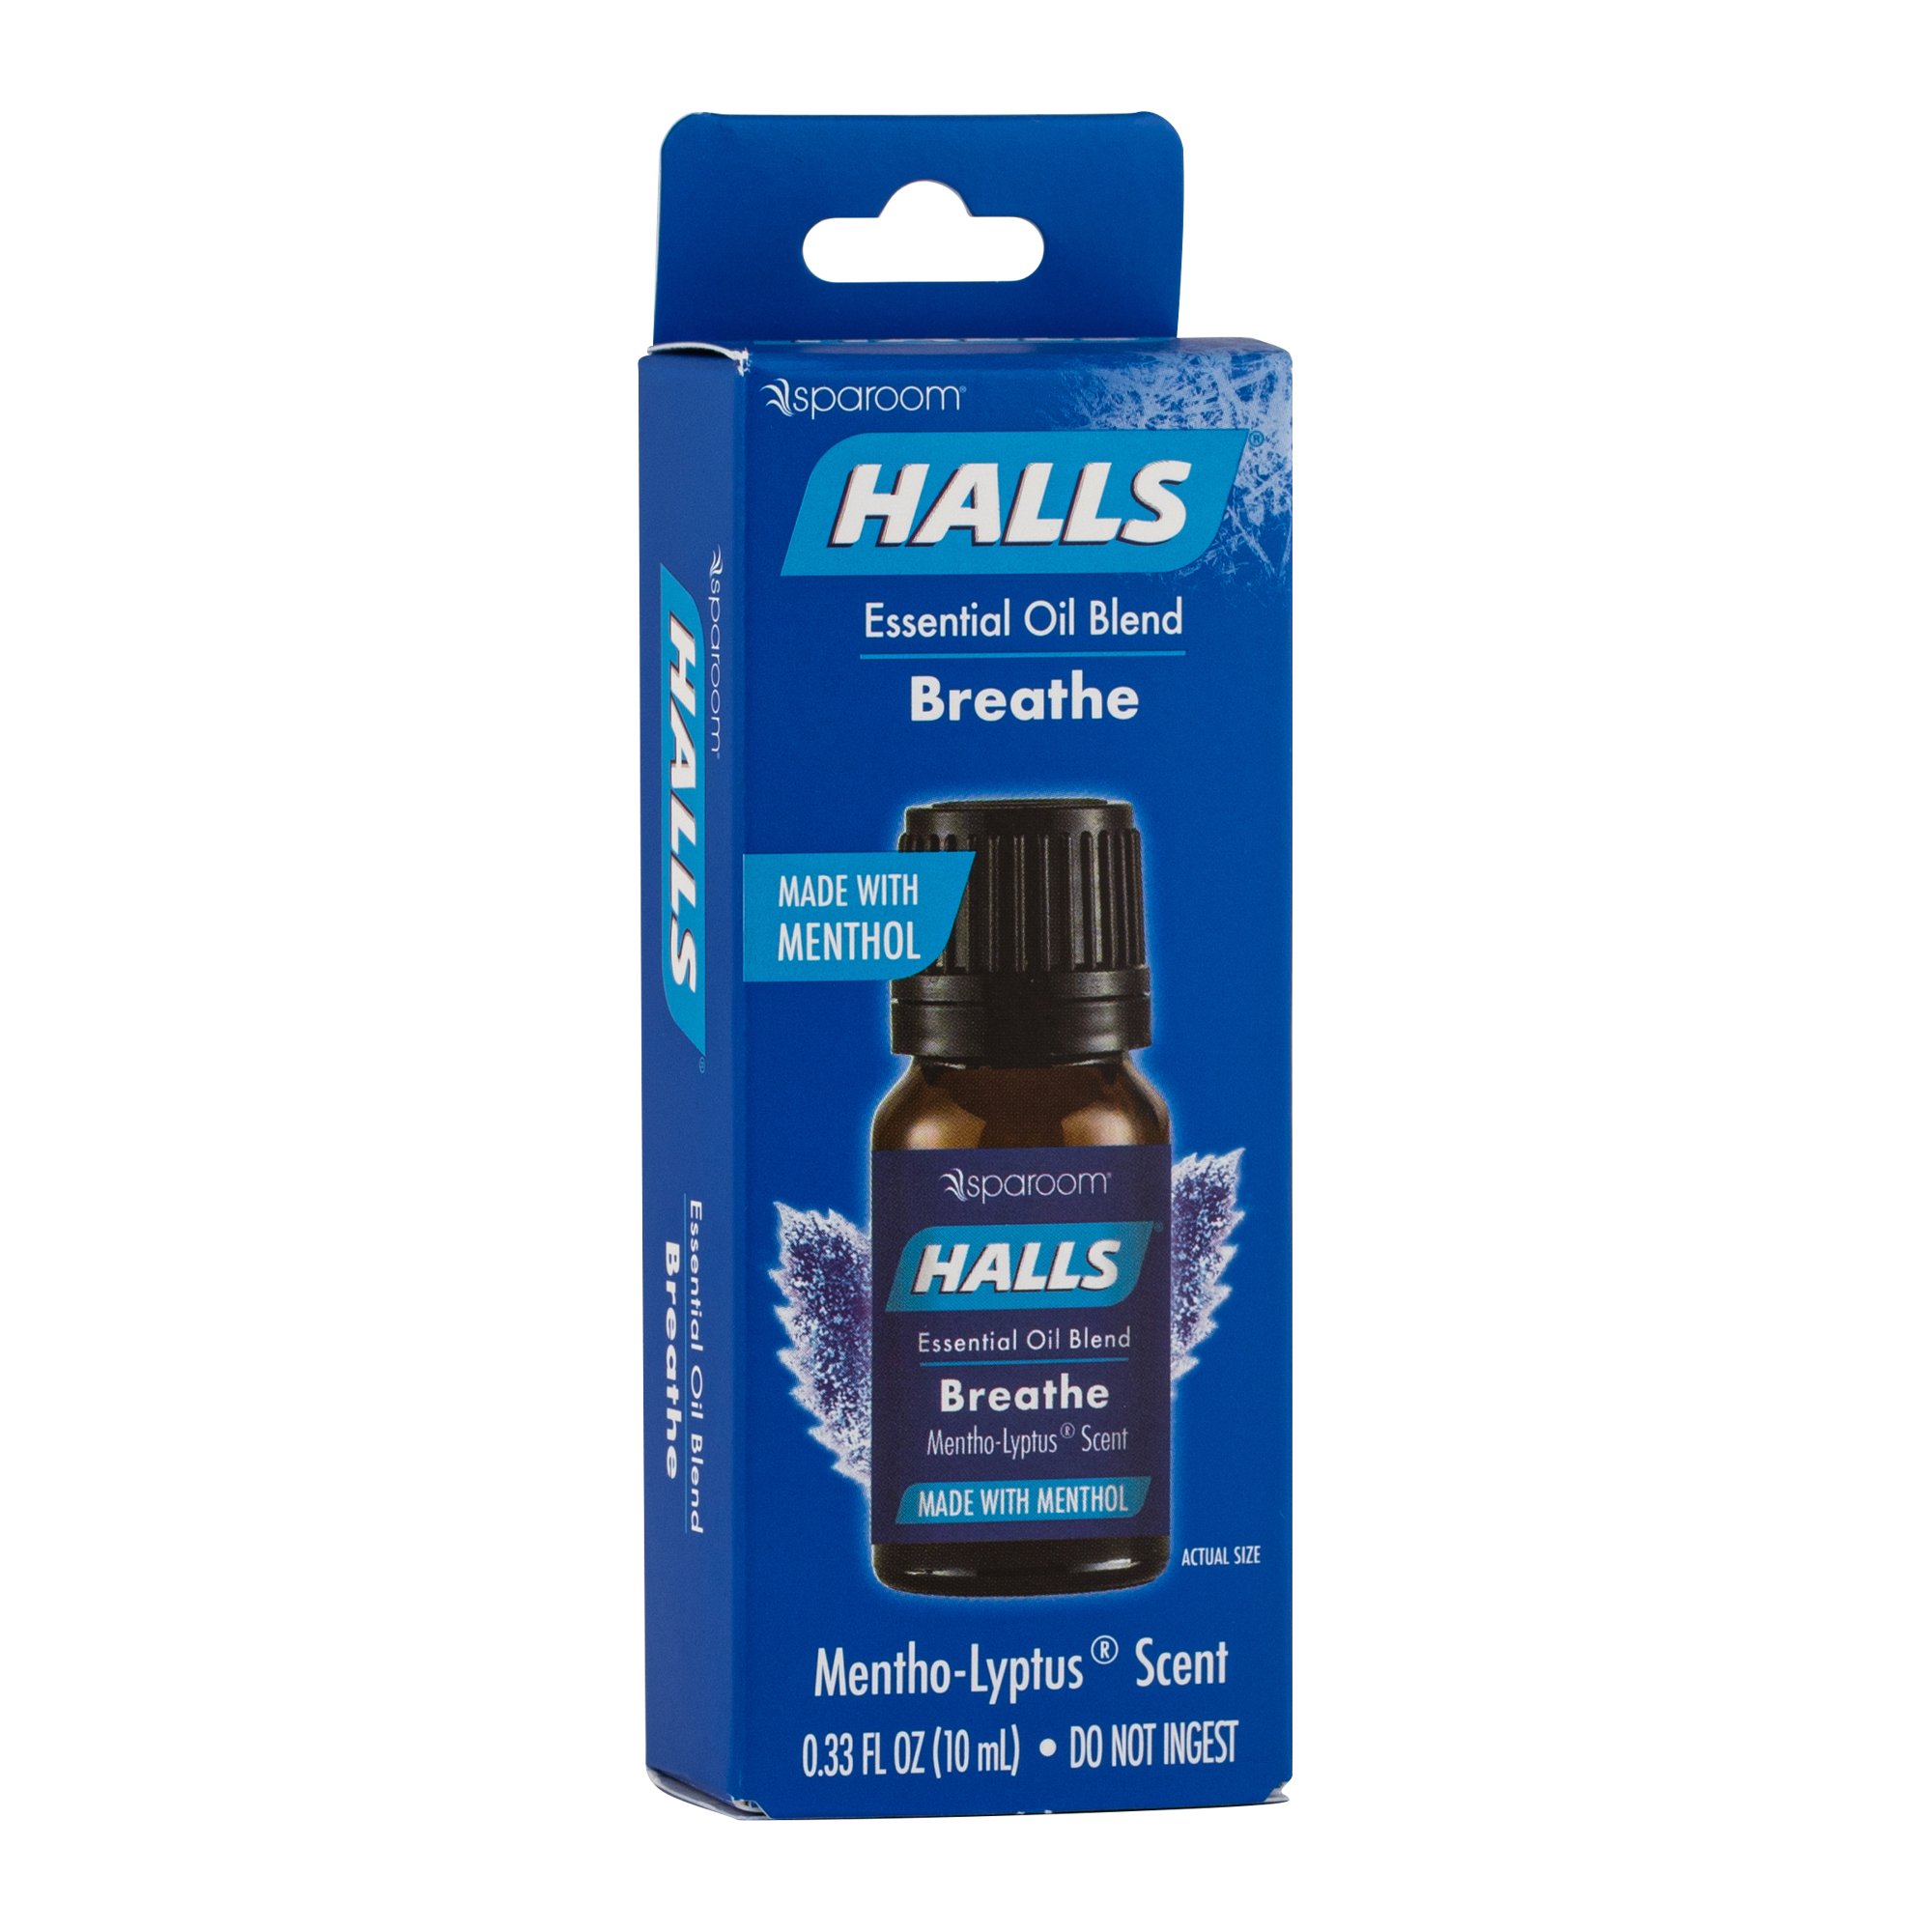 Halls Essential Oil 3 Pack